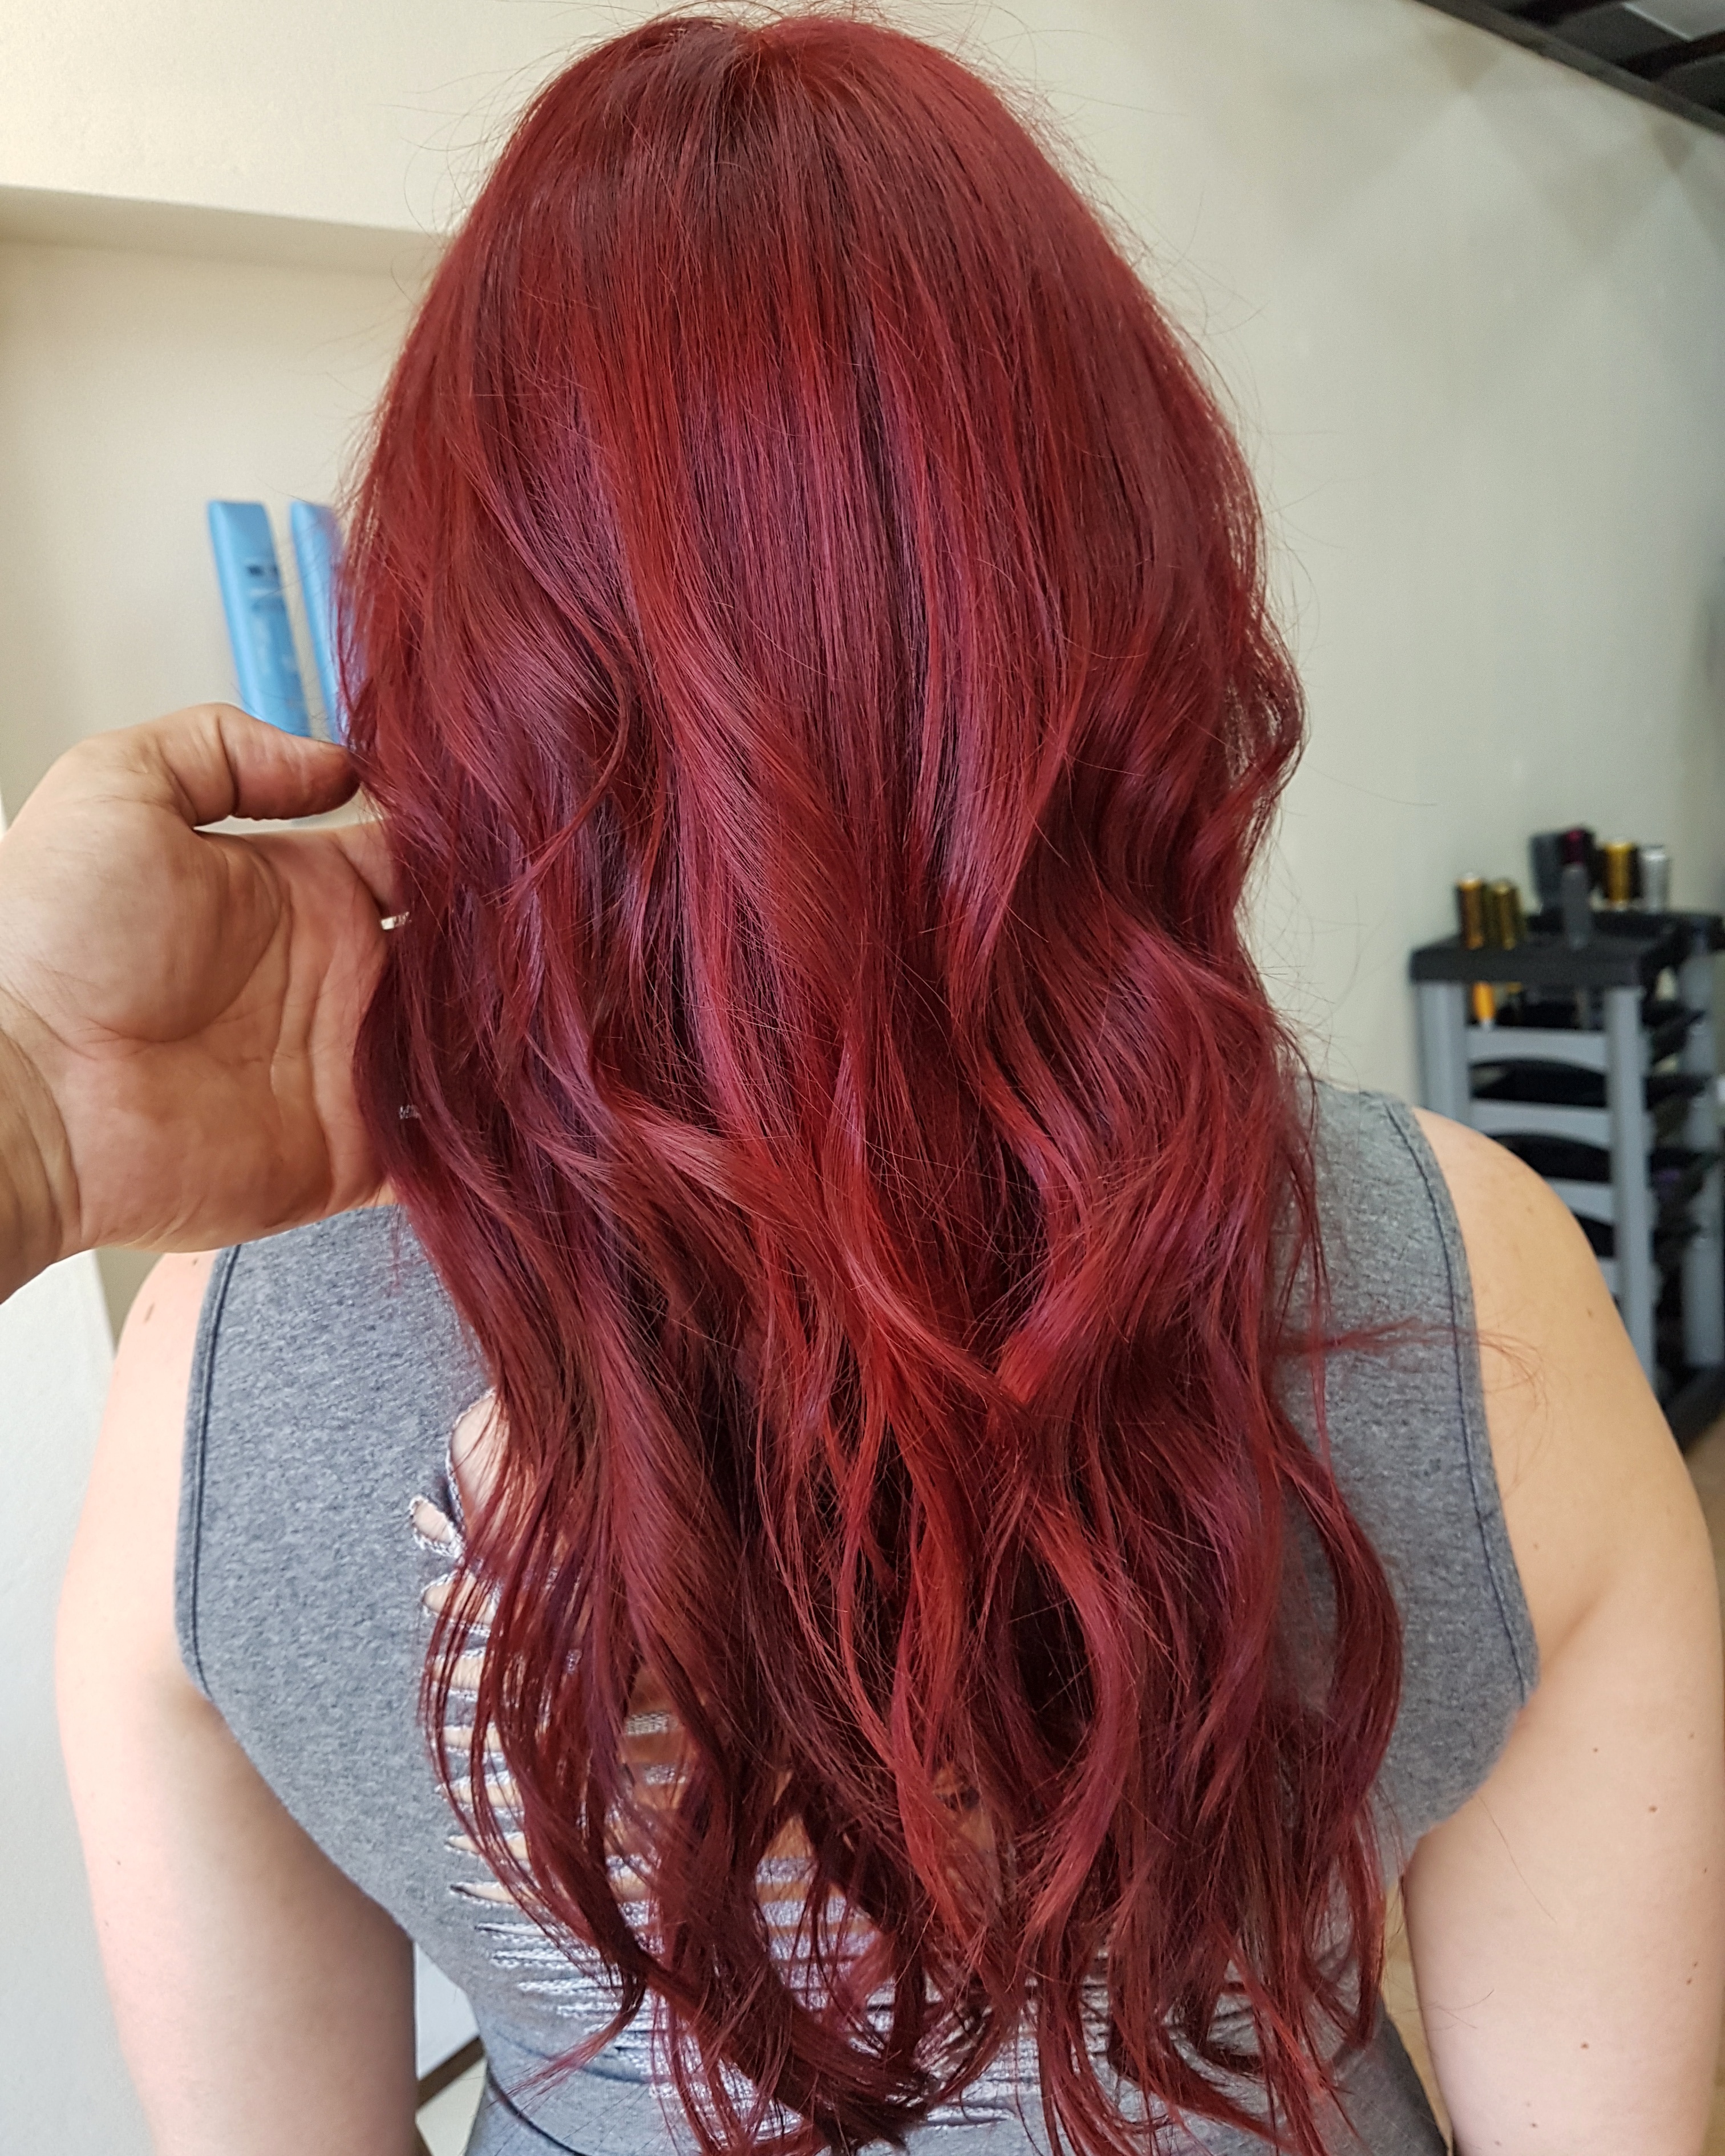 Um  vermelho Rubi para variar .
#redhair #colorista #colorhair  cabelo cabeleireiro(a) maquiador(a)